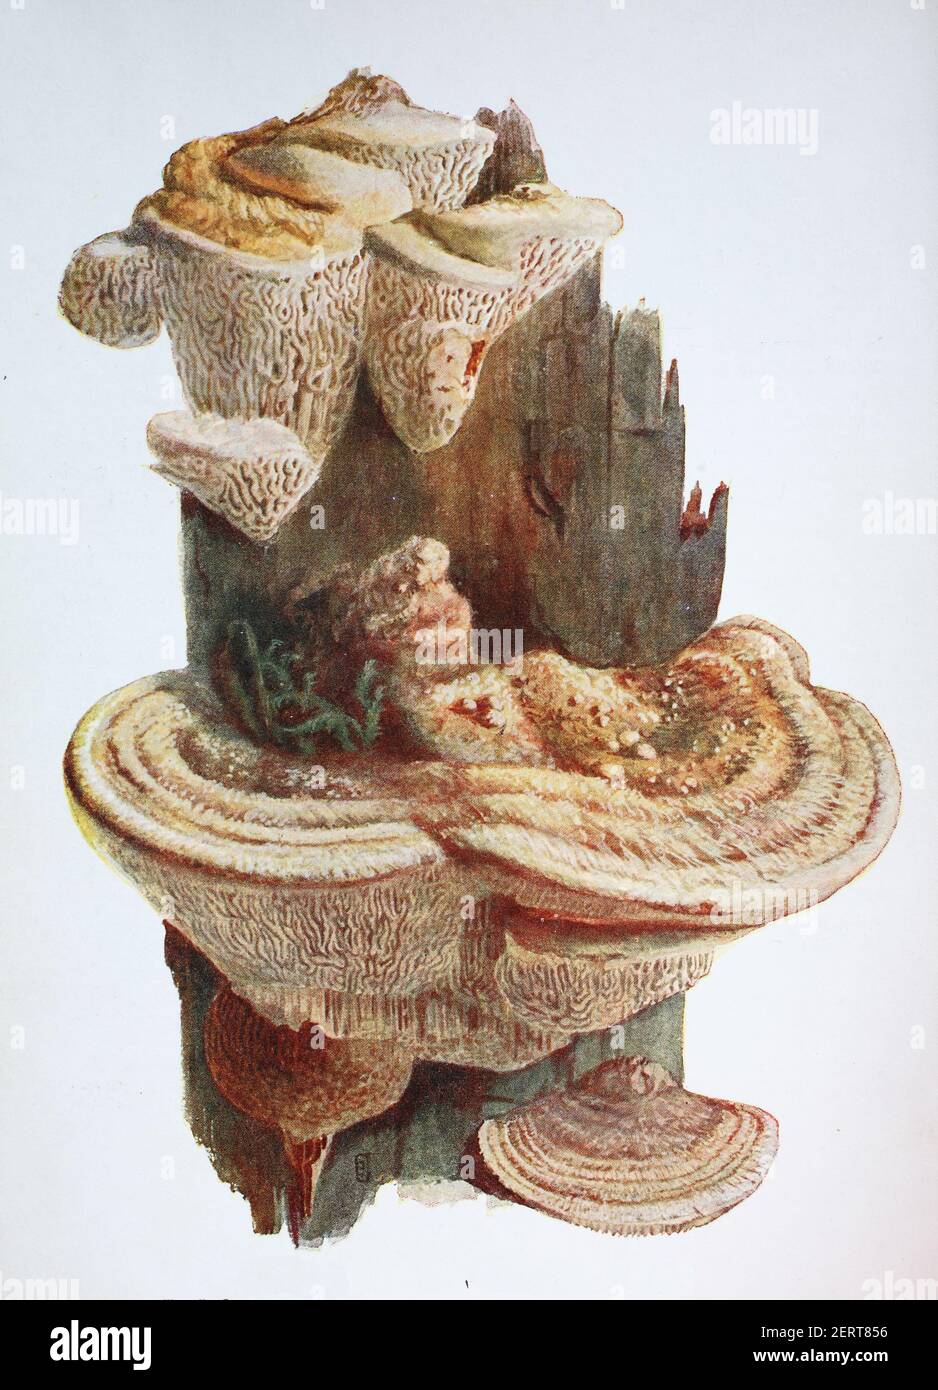 Daedalea quercina est une espèce de champignon dans l'ordre des Polyporales. C'est l'espèce type du genre Daedalea. Communément connu sous le nom de mazegill de chêne ou champignon maze-branchies, reproduction numérique d'une ilustration d'Emil Doerstling (1859-1940) Banque D'Images